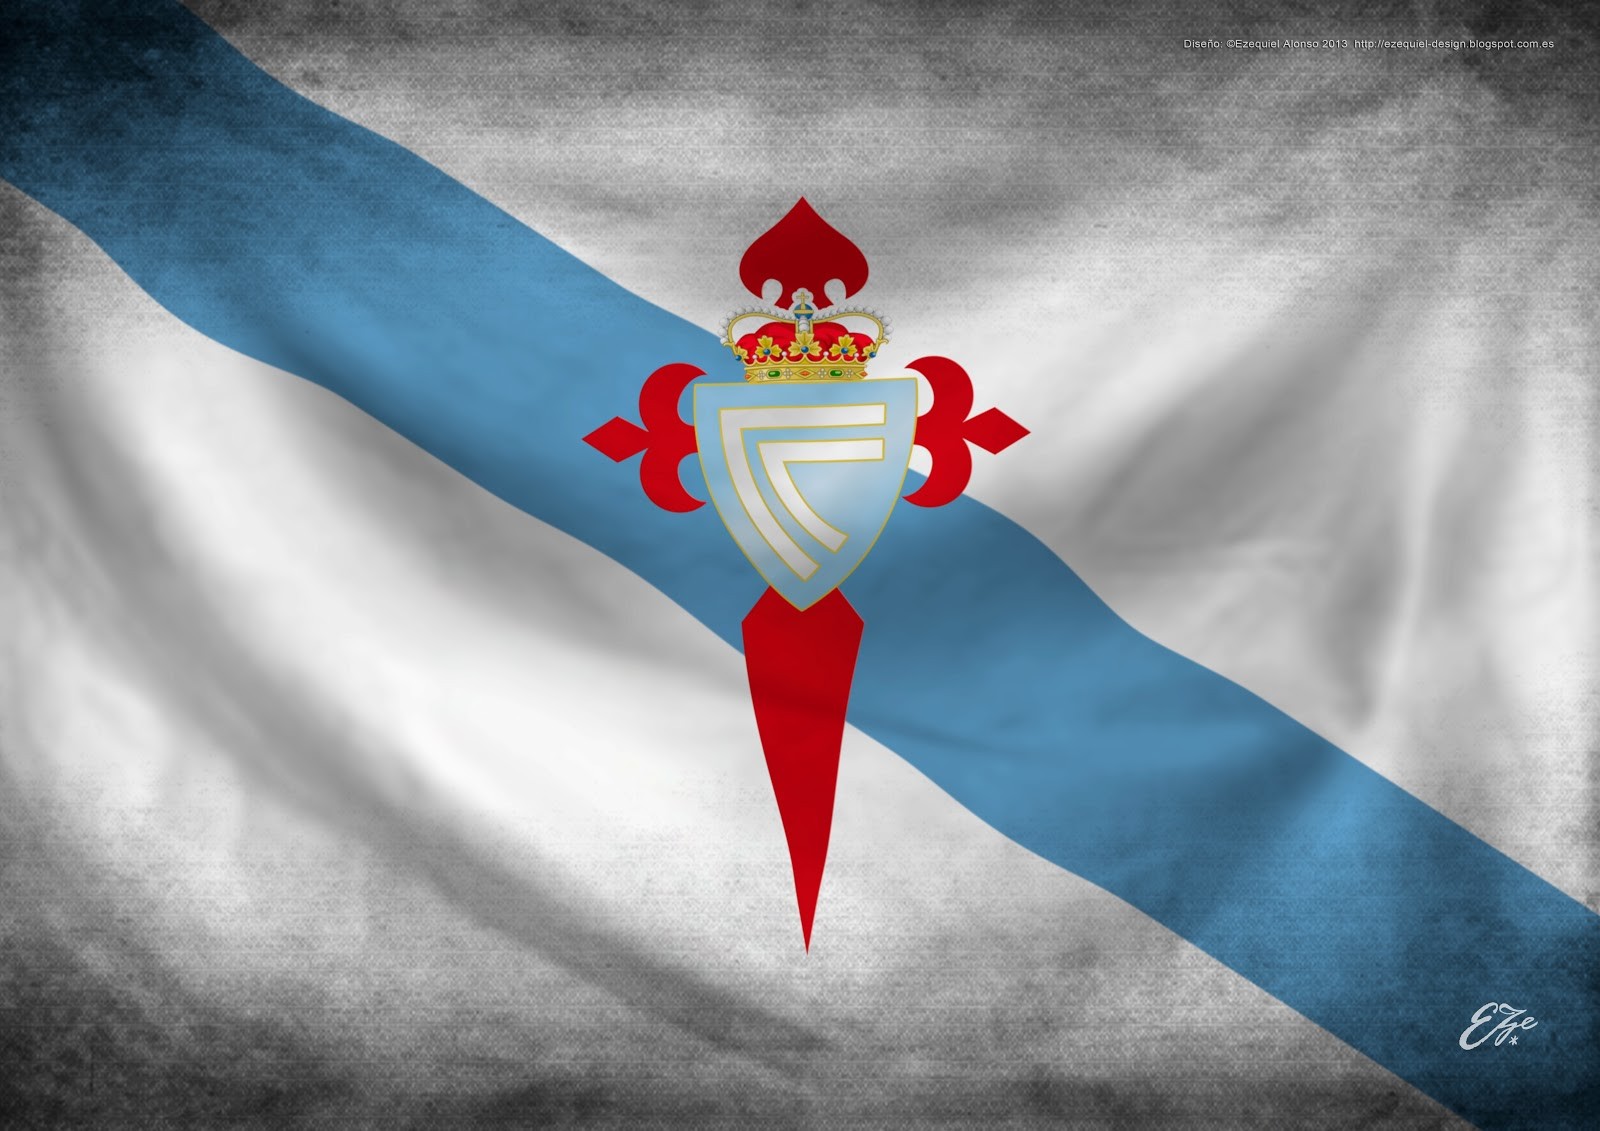 Galicia, Celta De Vigo, Flag, Soccer Wallpapers HD ...